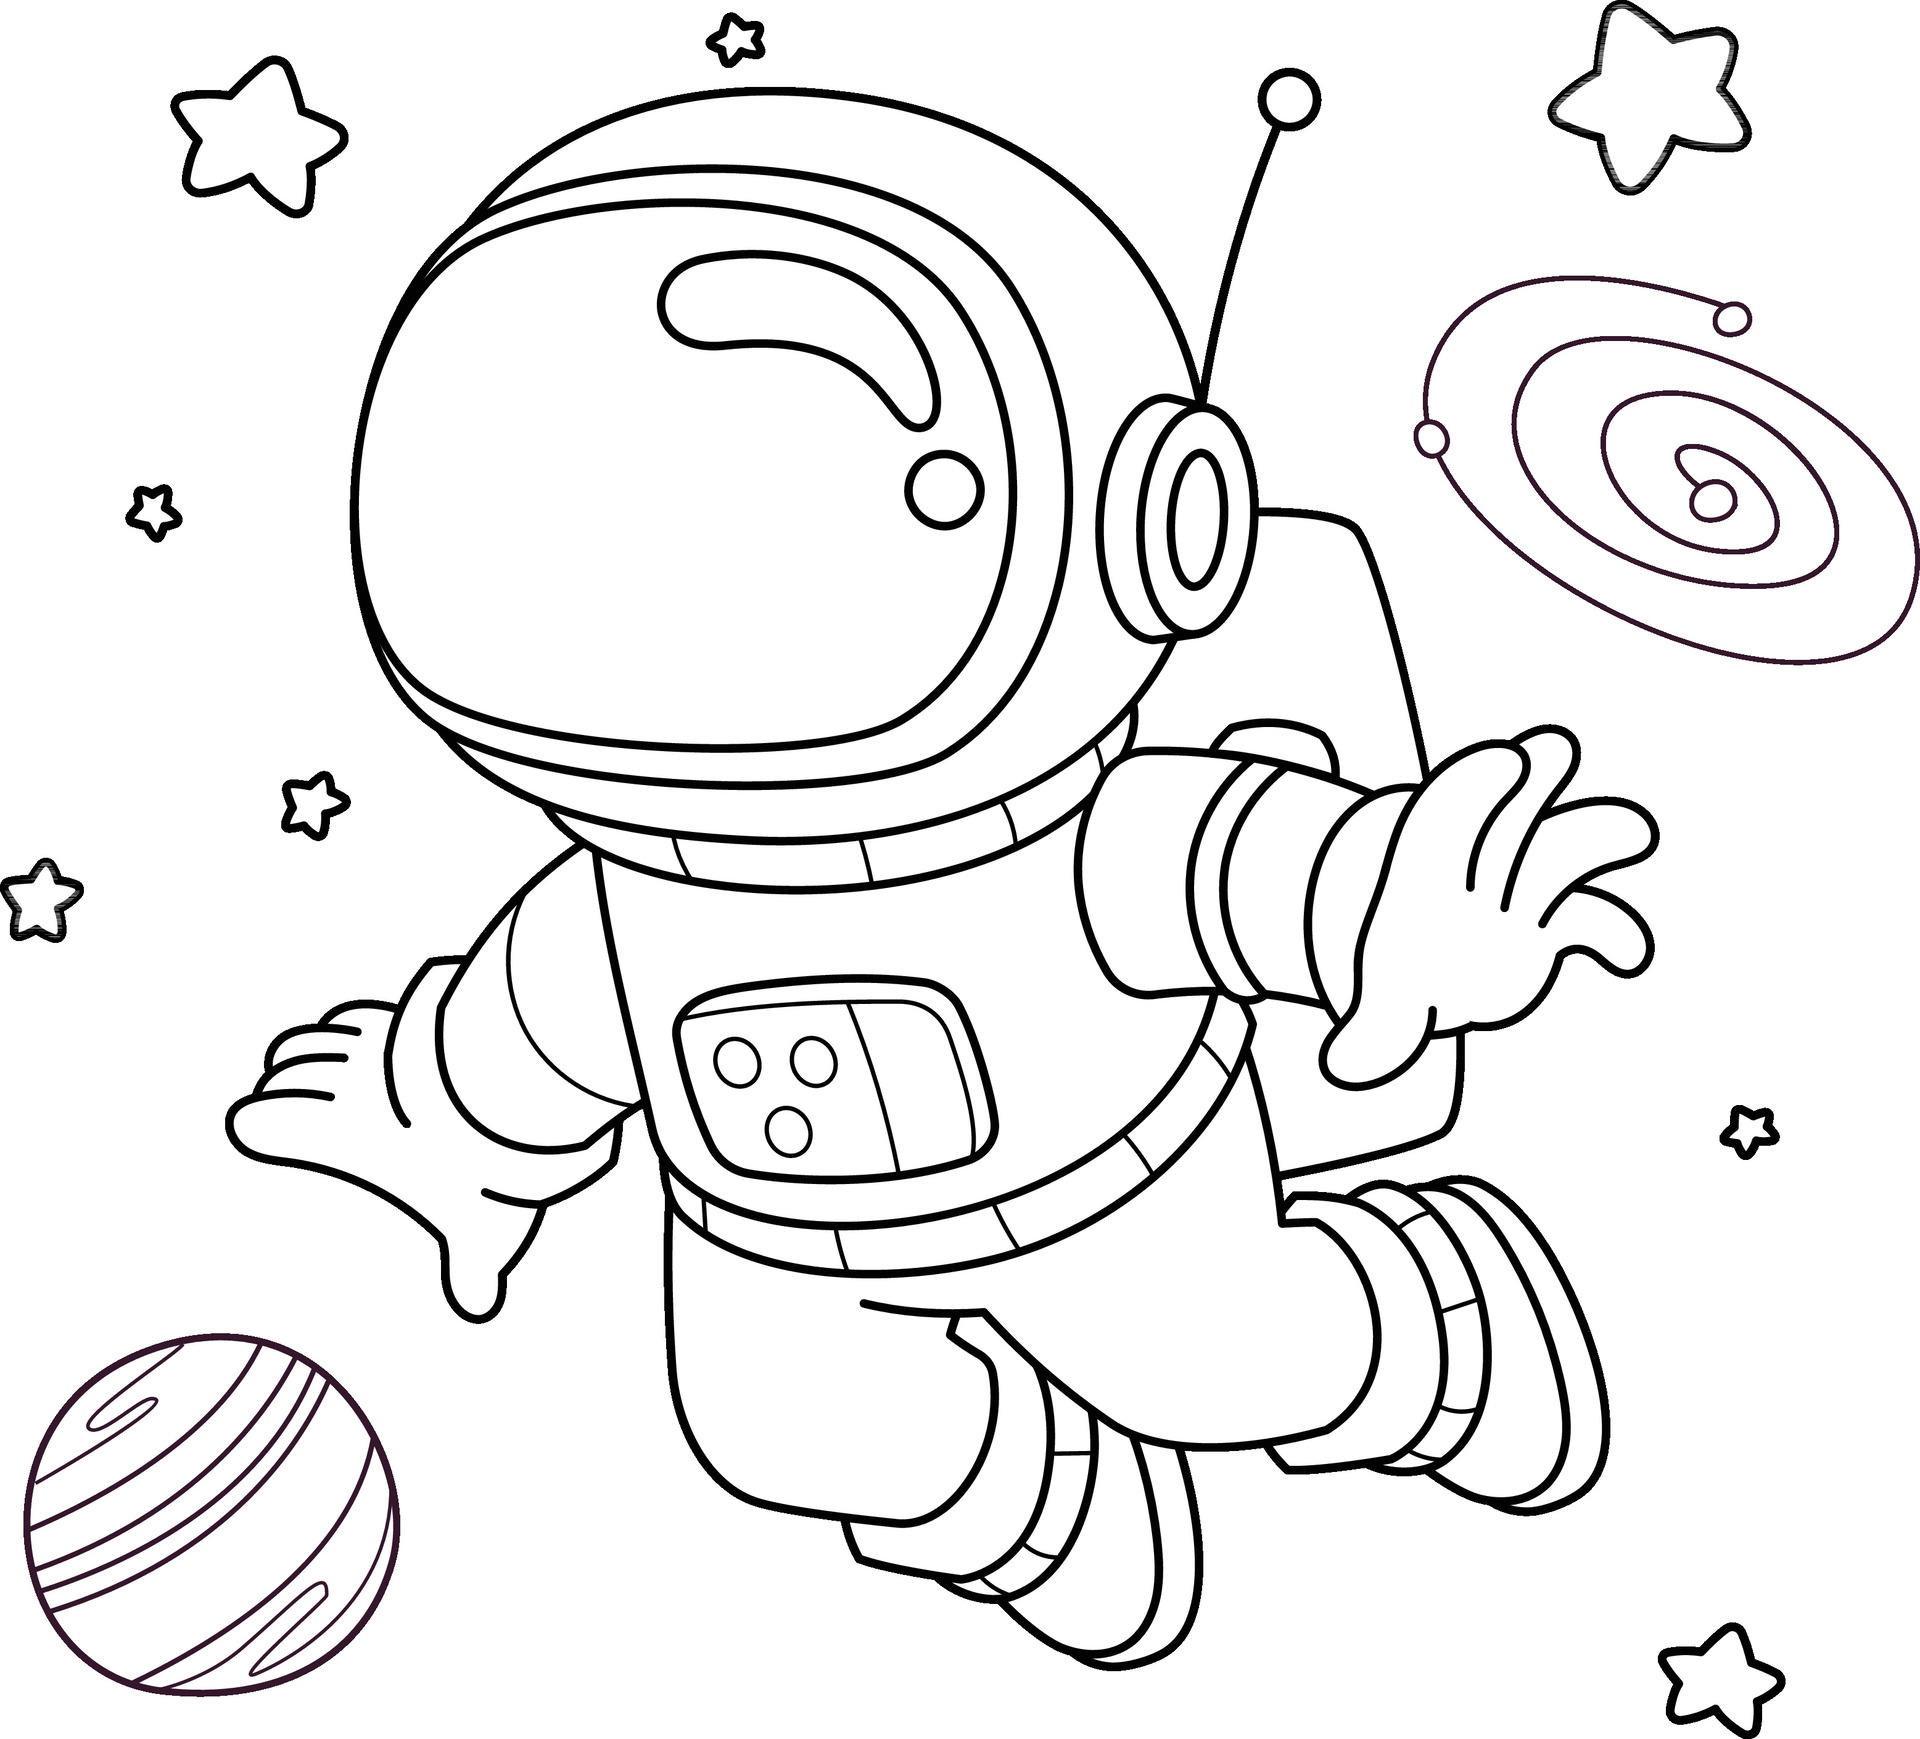 Космонавт раскраска для детей. Раскраска космонавт в космосе. Космонавт раскраска для малышей. Трафарет Космонавта в скафандре. Космонавт раскраска для детей 4 5 лет